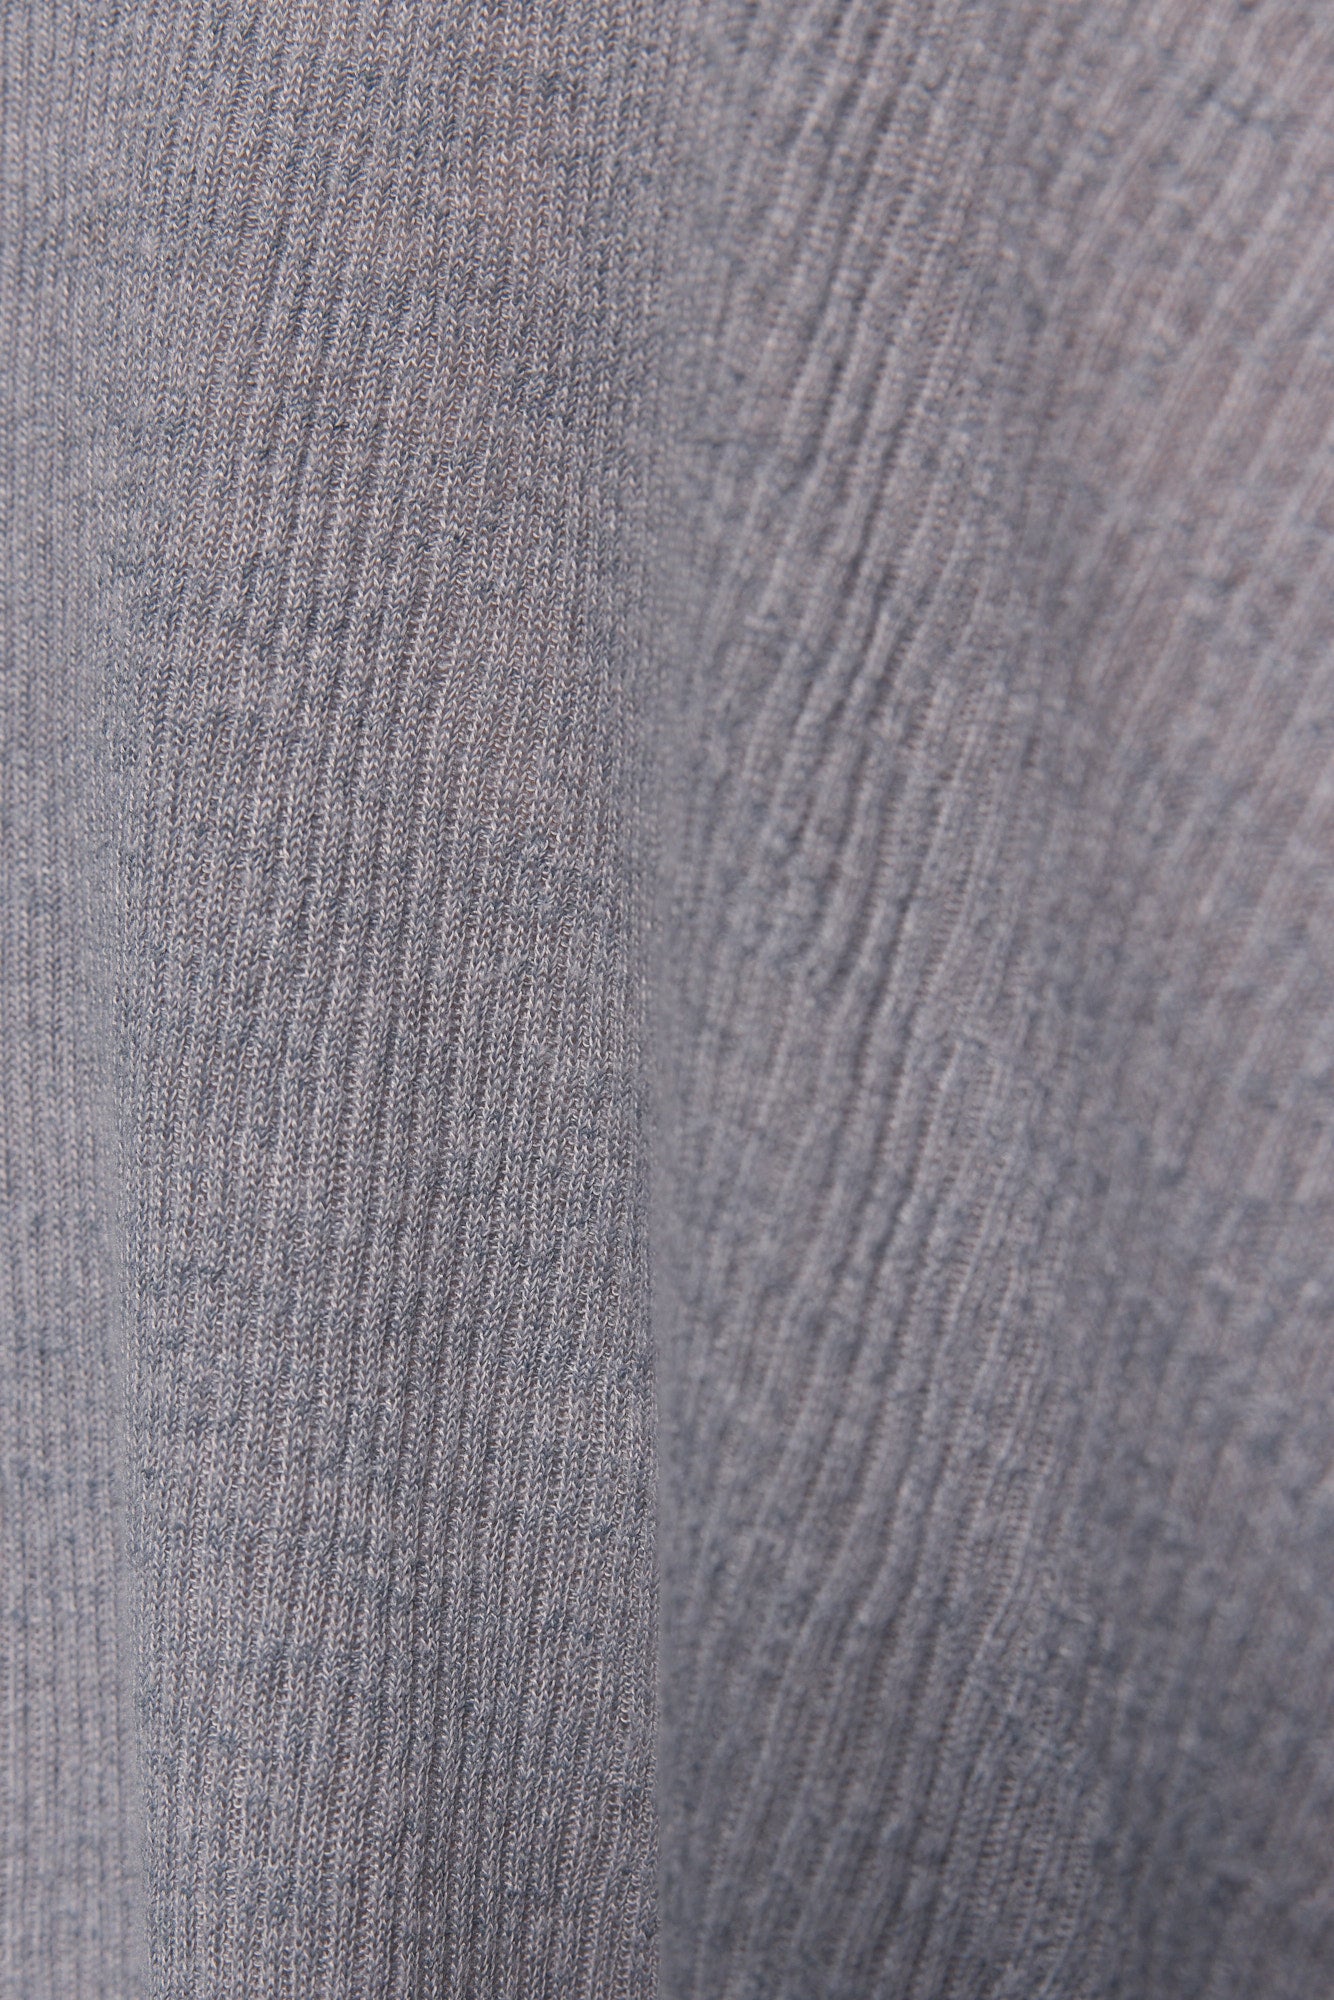 Veste ample grise à manches courtes | Cliffon JOELLE Collection